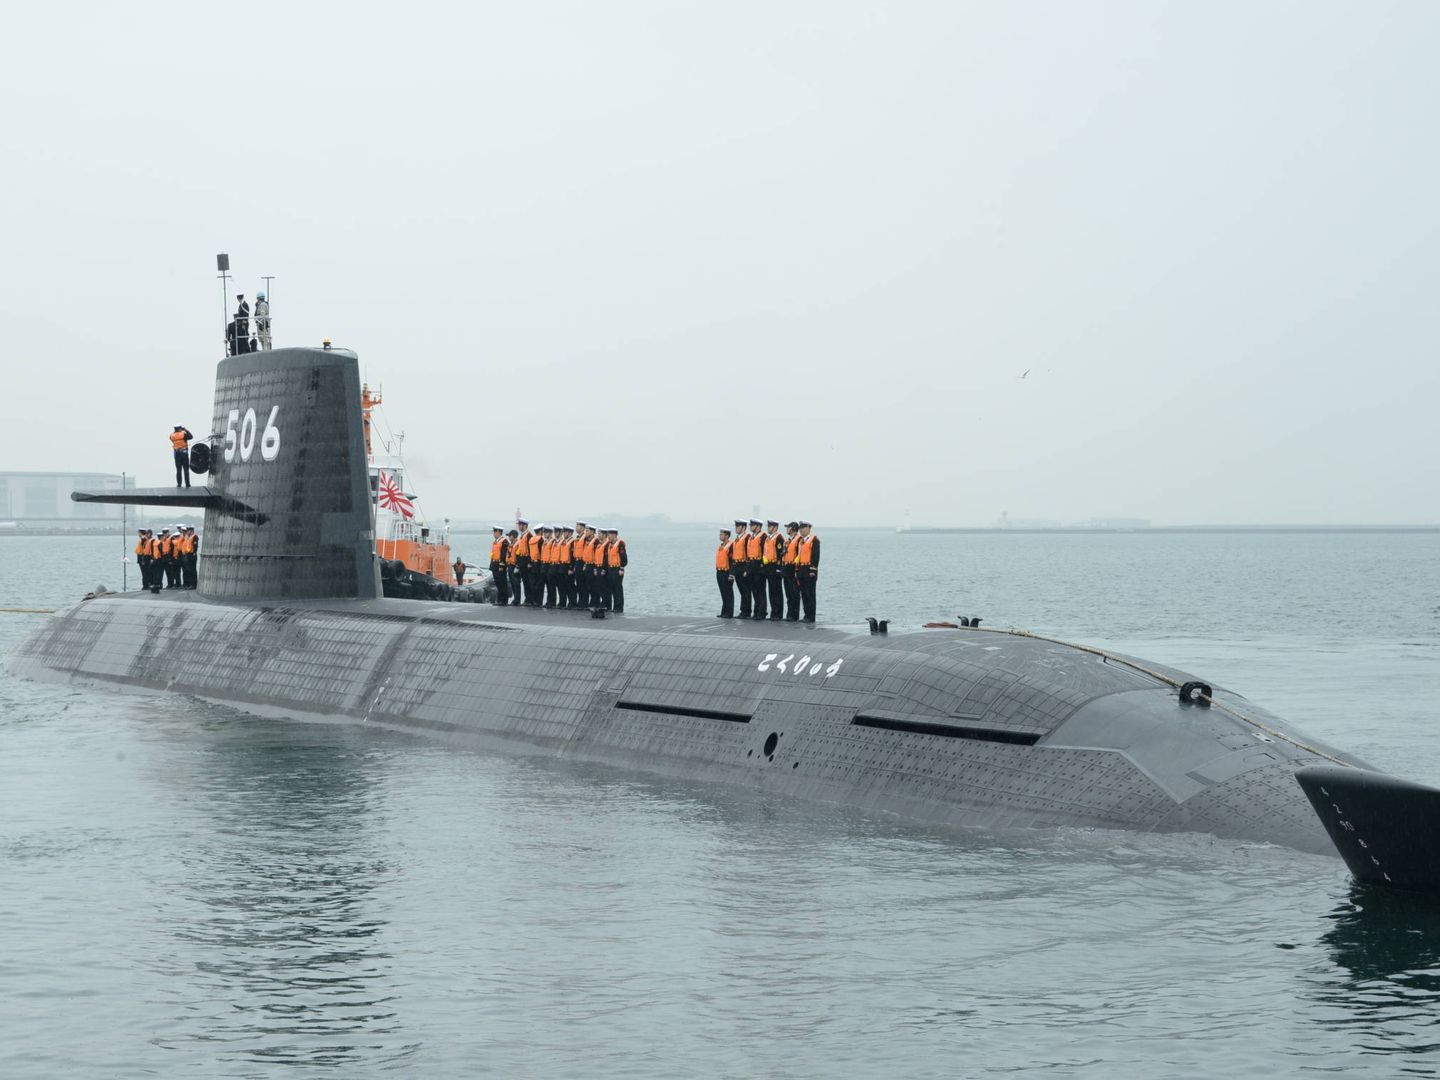 Submarino SSK japonés SS-506 Kokury?. (JMSDF)